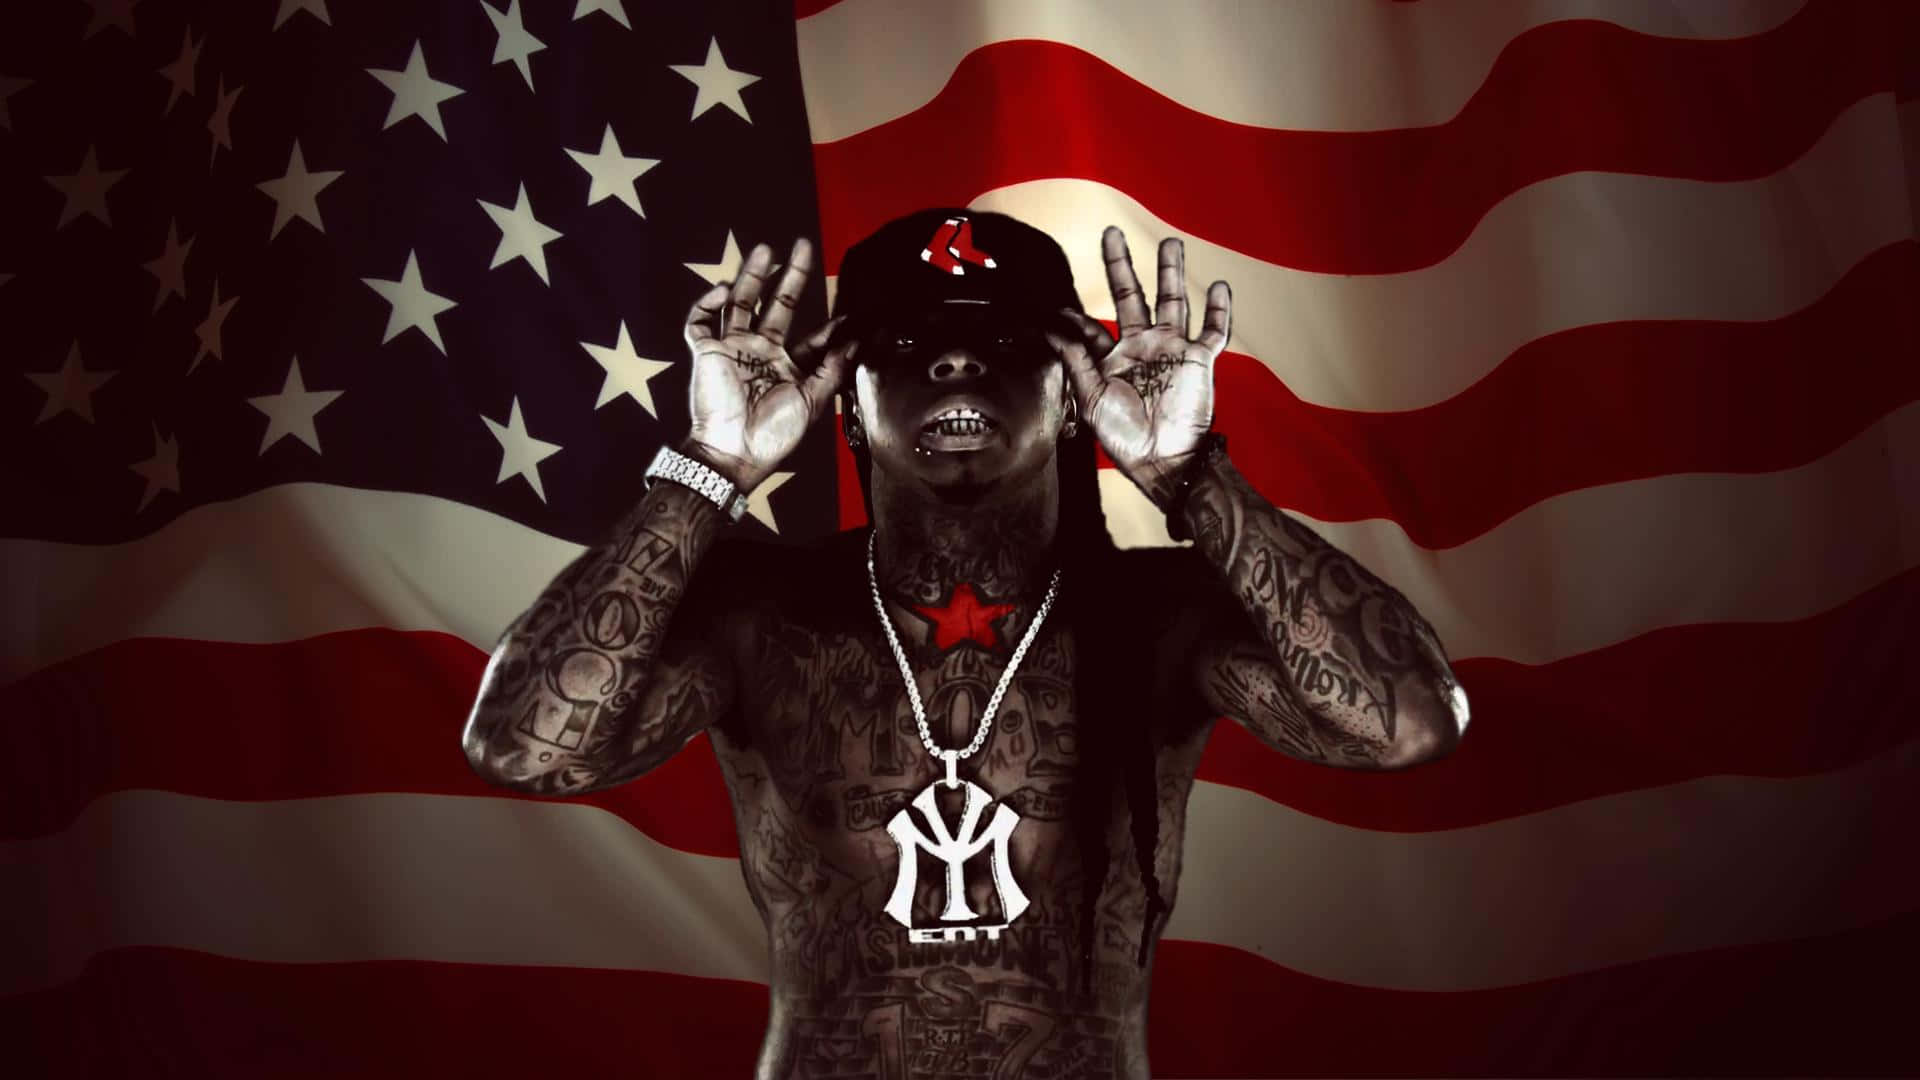 Fondode Pantalla De Lil Wayne Con La Bandera Estadounidense. Fondo de pantalla